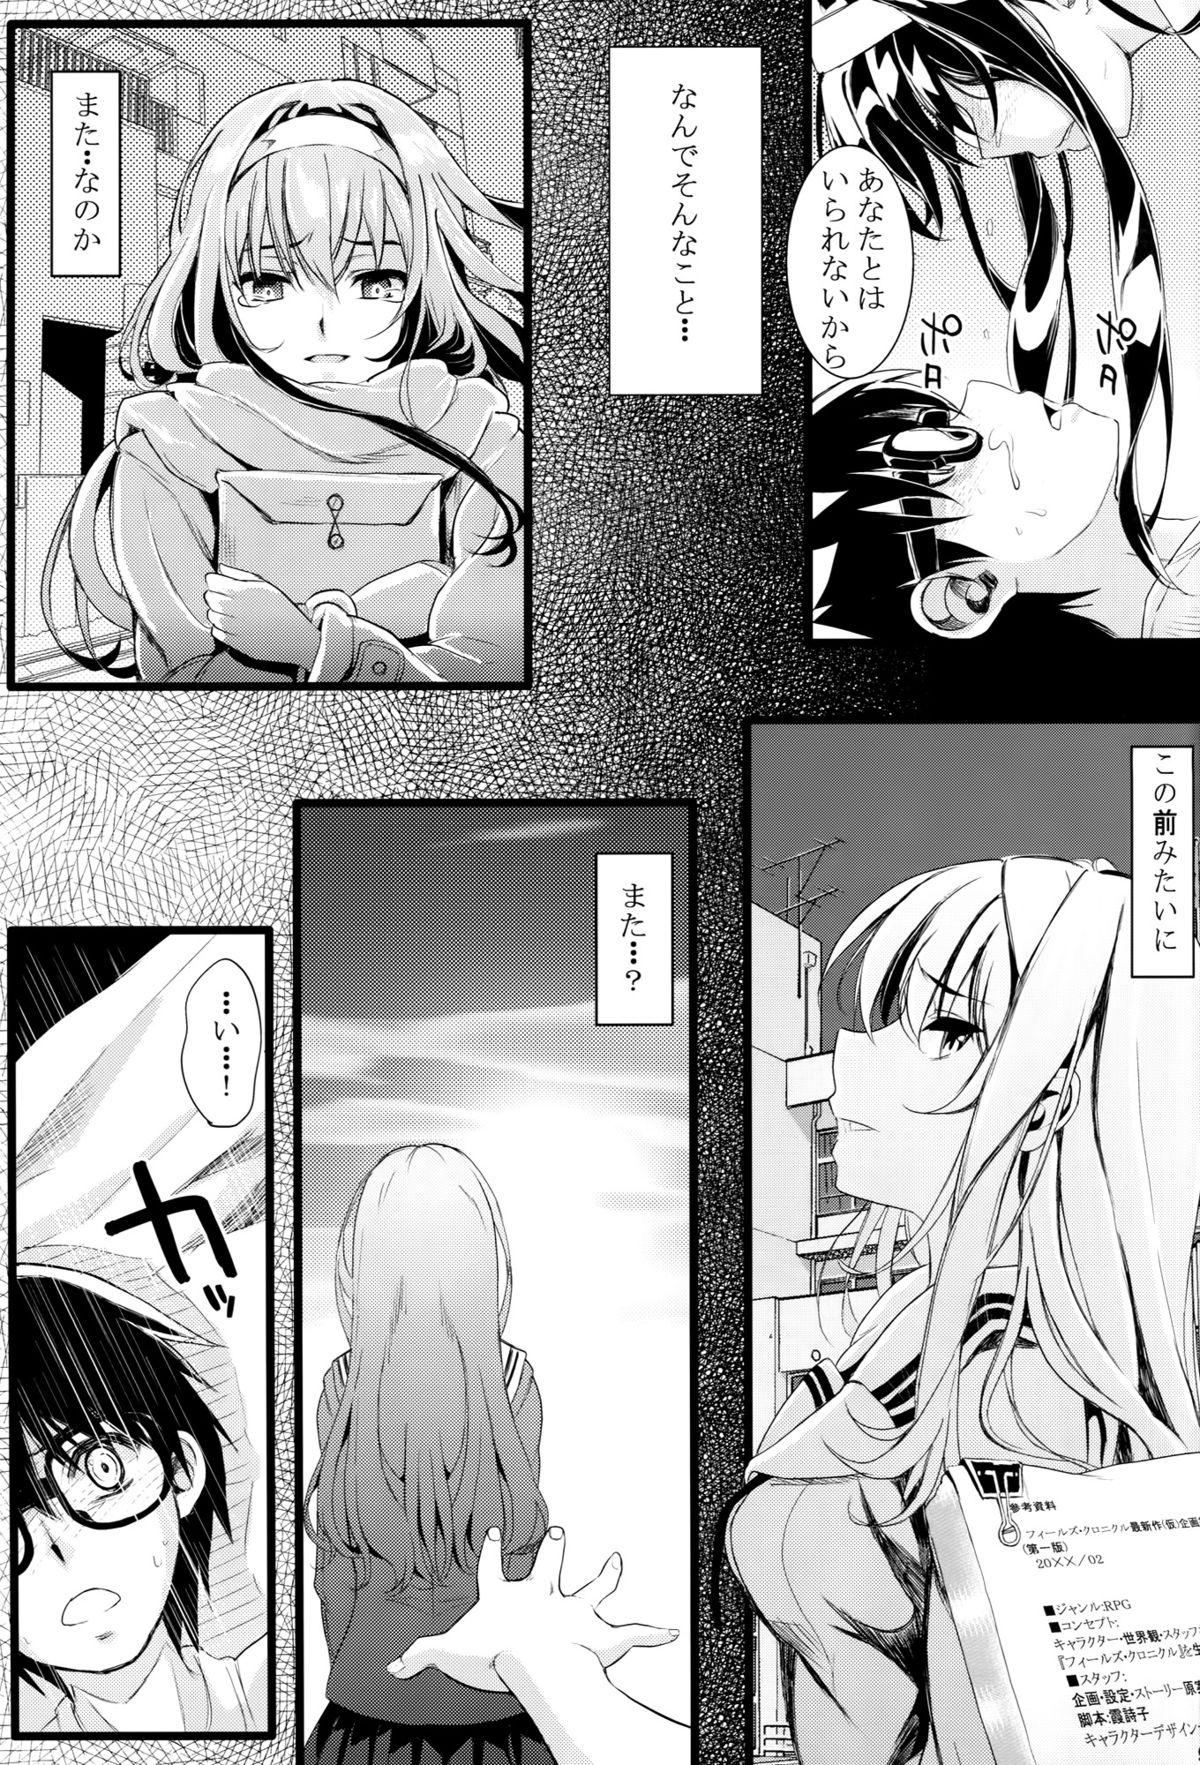 Hardcore Porn Saenai Futari no Itashikata - Saenai heroine no sodatekata Para - Page 8